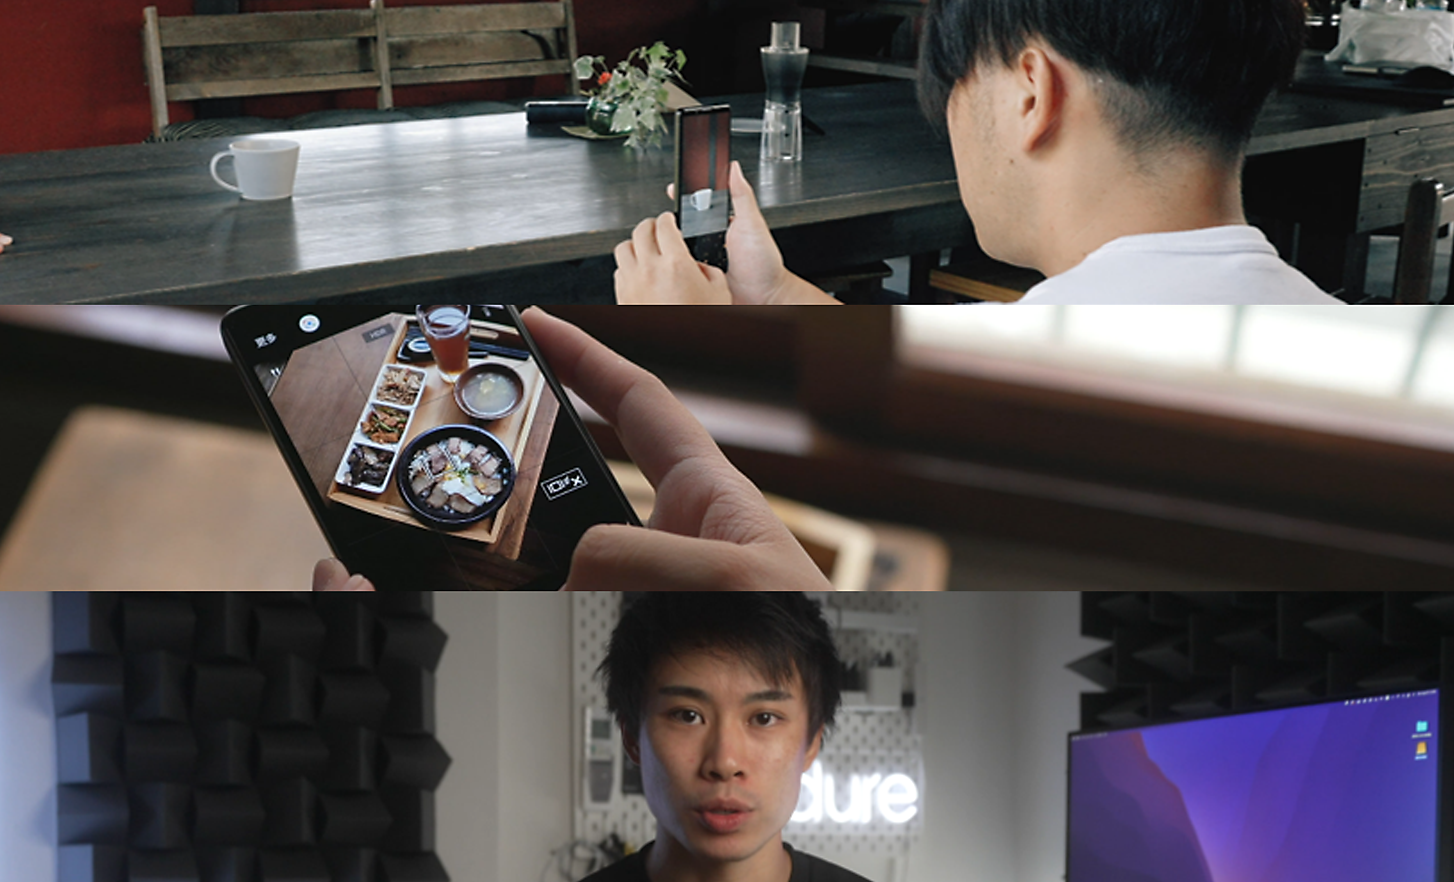 Τρεις εικόνες: ένας άνδρας τραβάει μια φωτογραφία με ένα Xperia, κάποιος κοιτάζει μια εικόνα σε ένα Xperia και ένας άνδρας κοιτάζει απευθείας την κάμερα